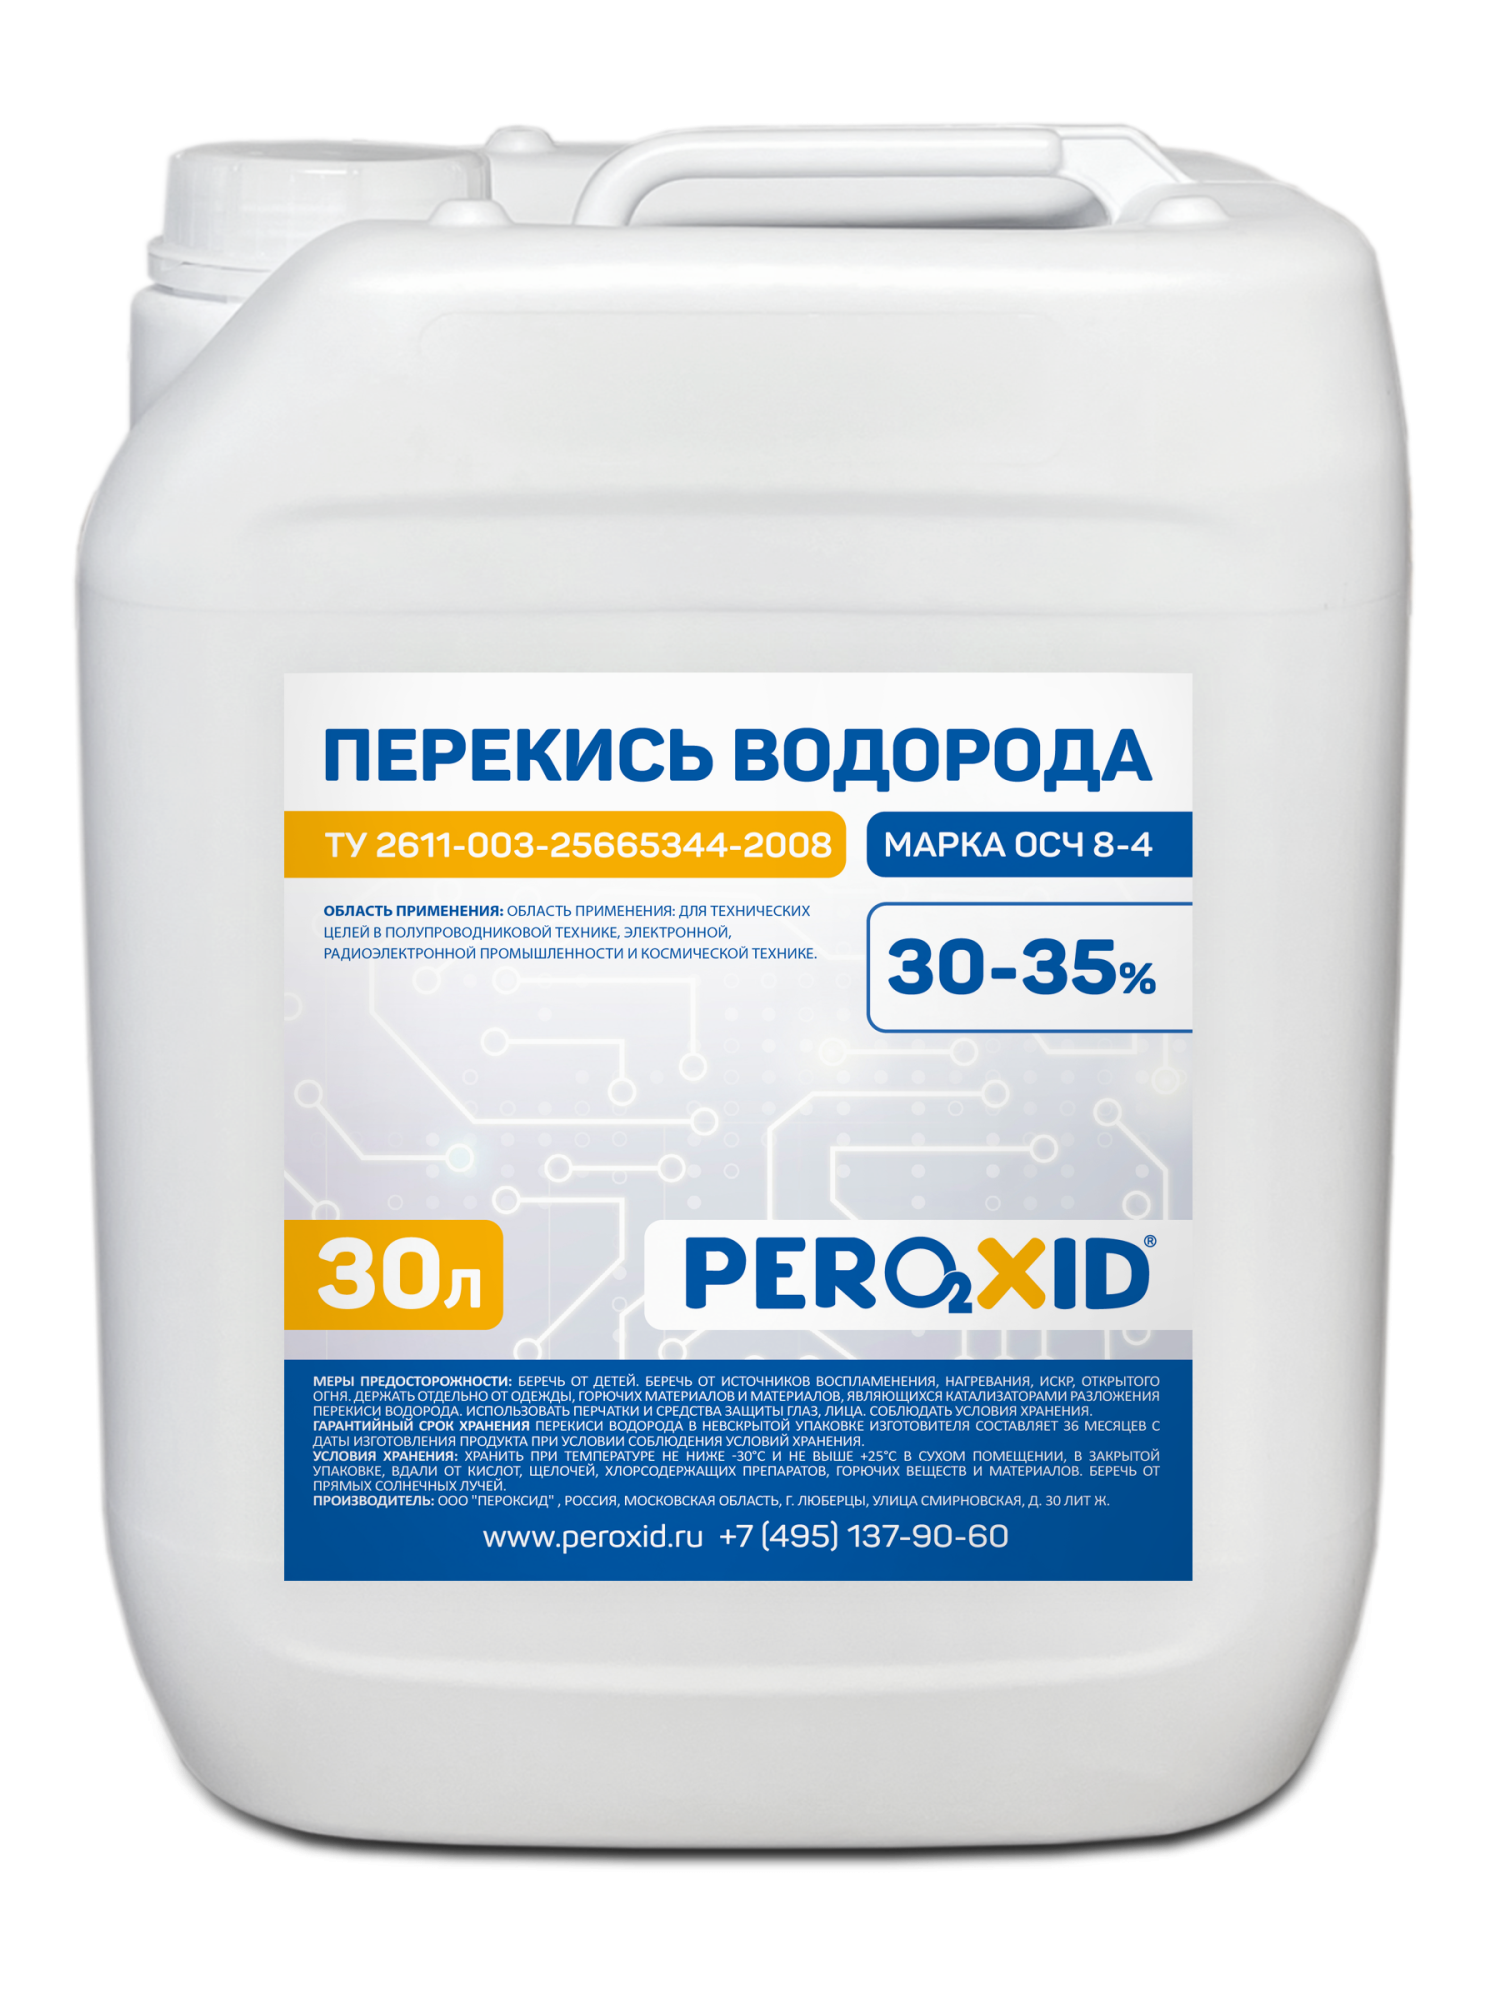 Перекись водорода особой чистоты PEROXID 30-35% марка ОСЧ 8-4 ТУ 2611-003-25665344-2008 30 л/31 кг